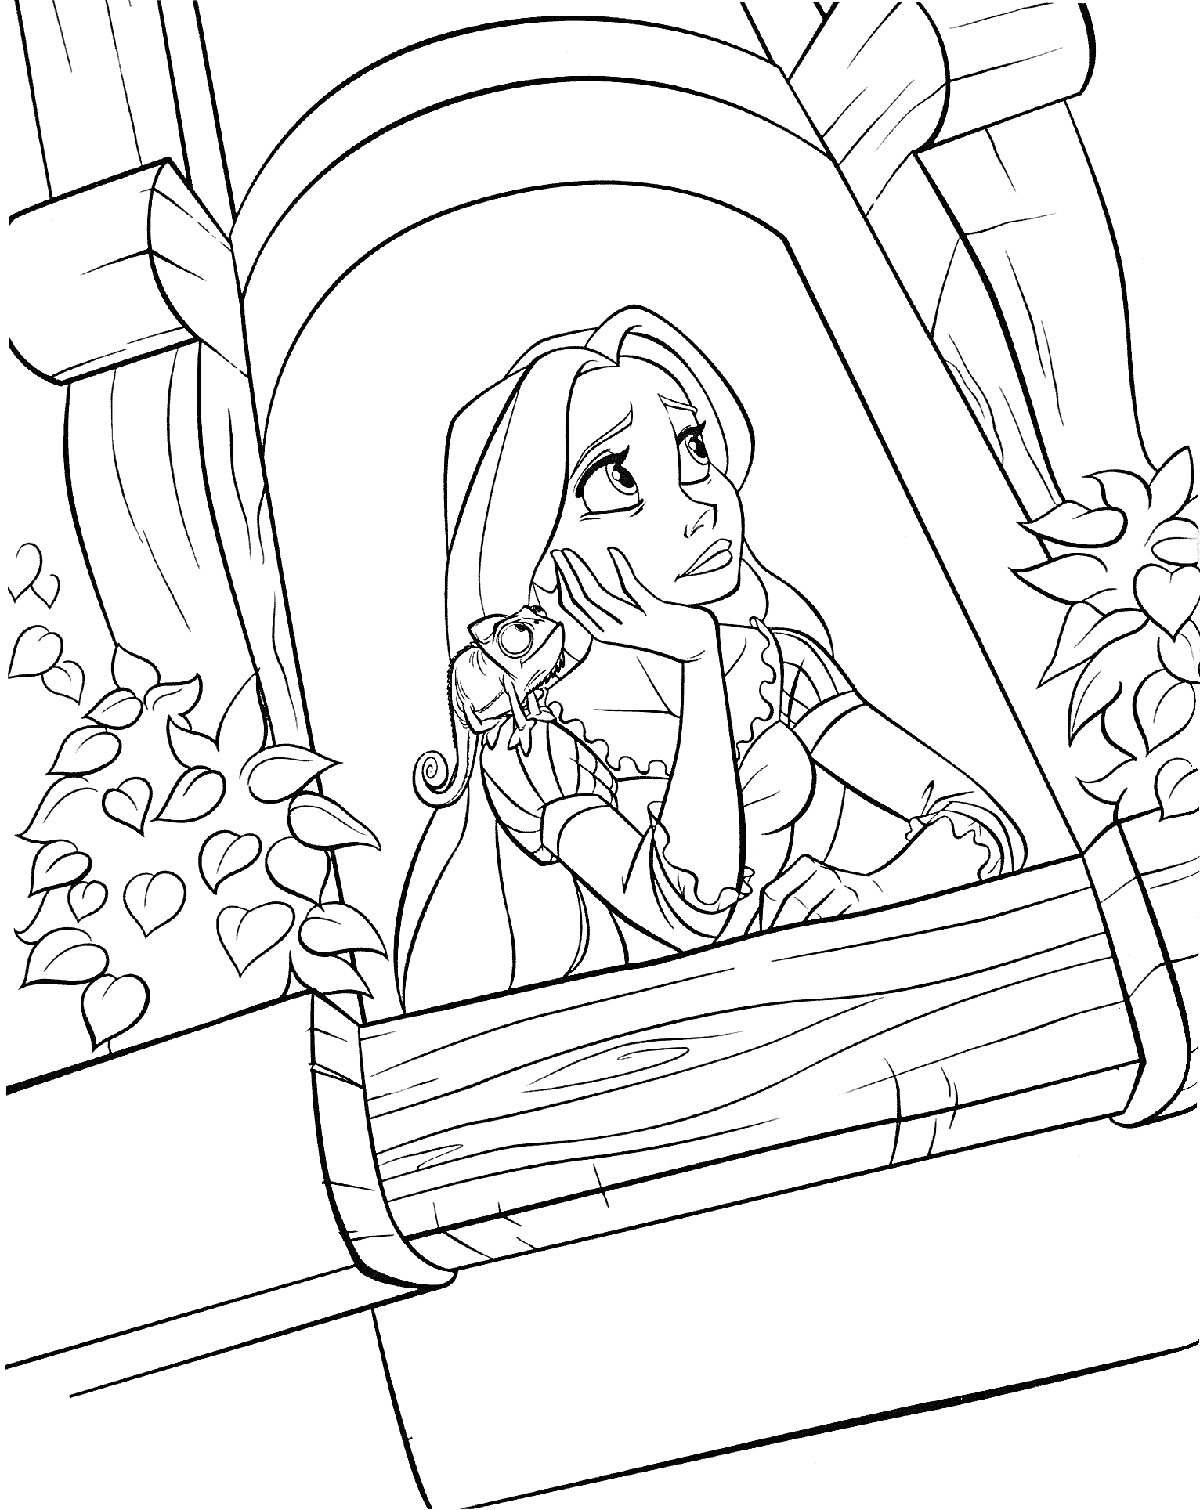 Раскраска Девочка с длинными волосами на балконе с ящерицей и растениями